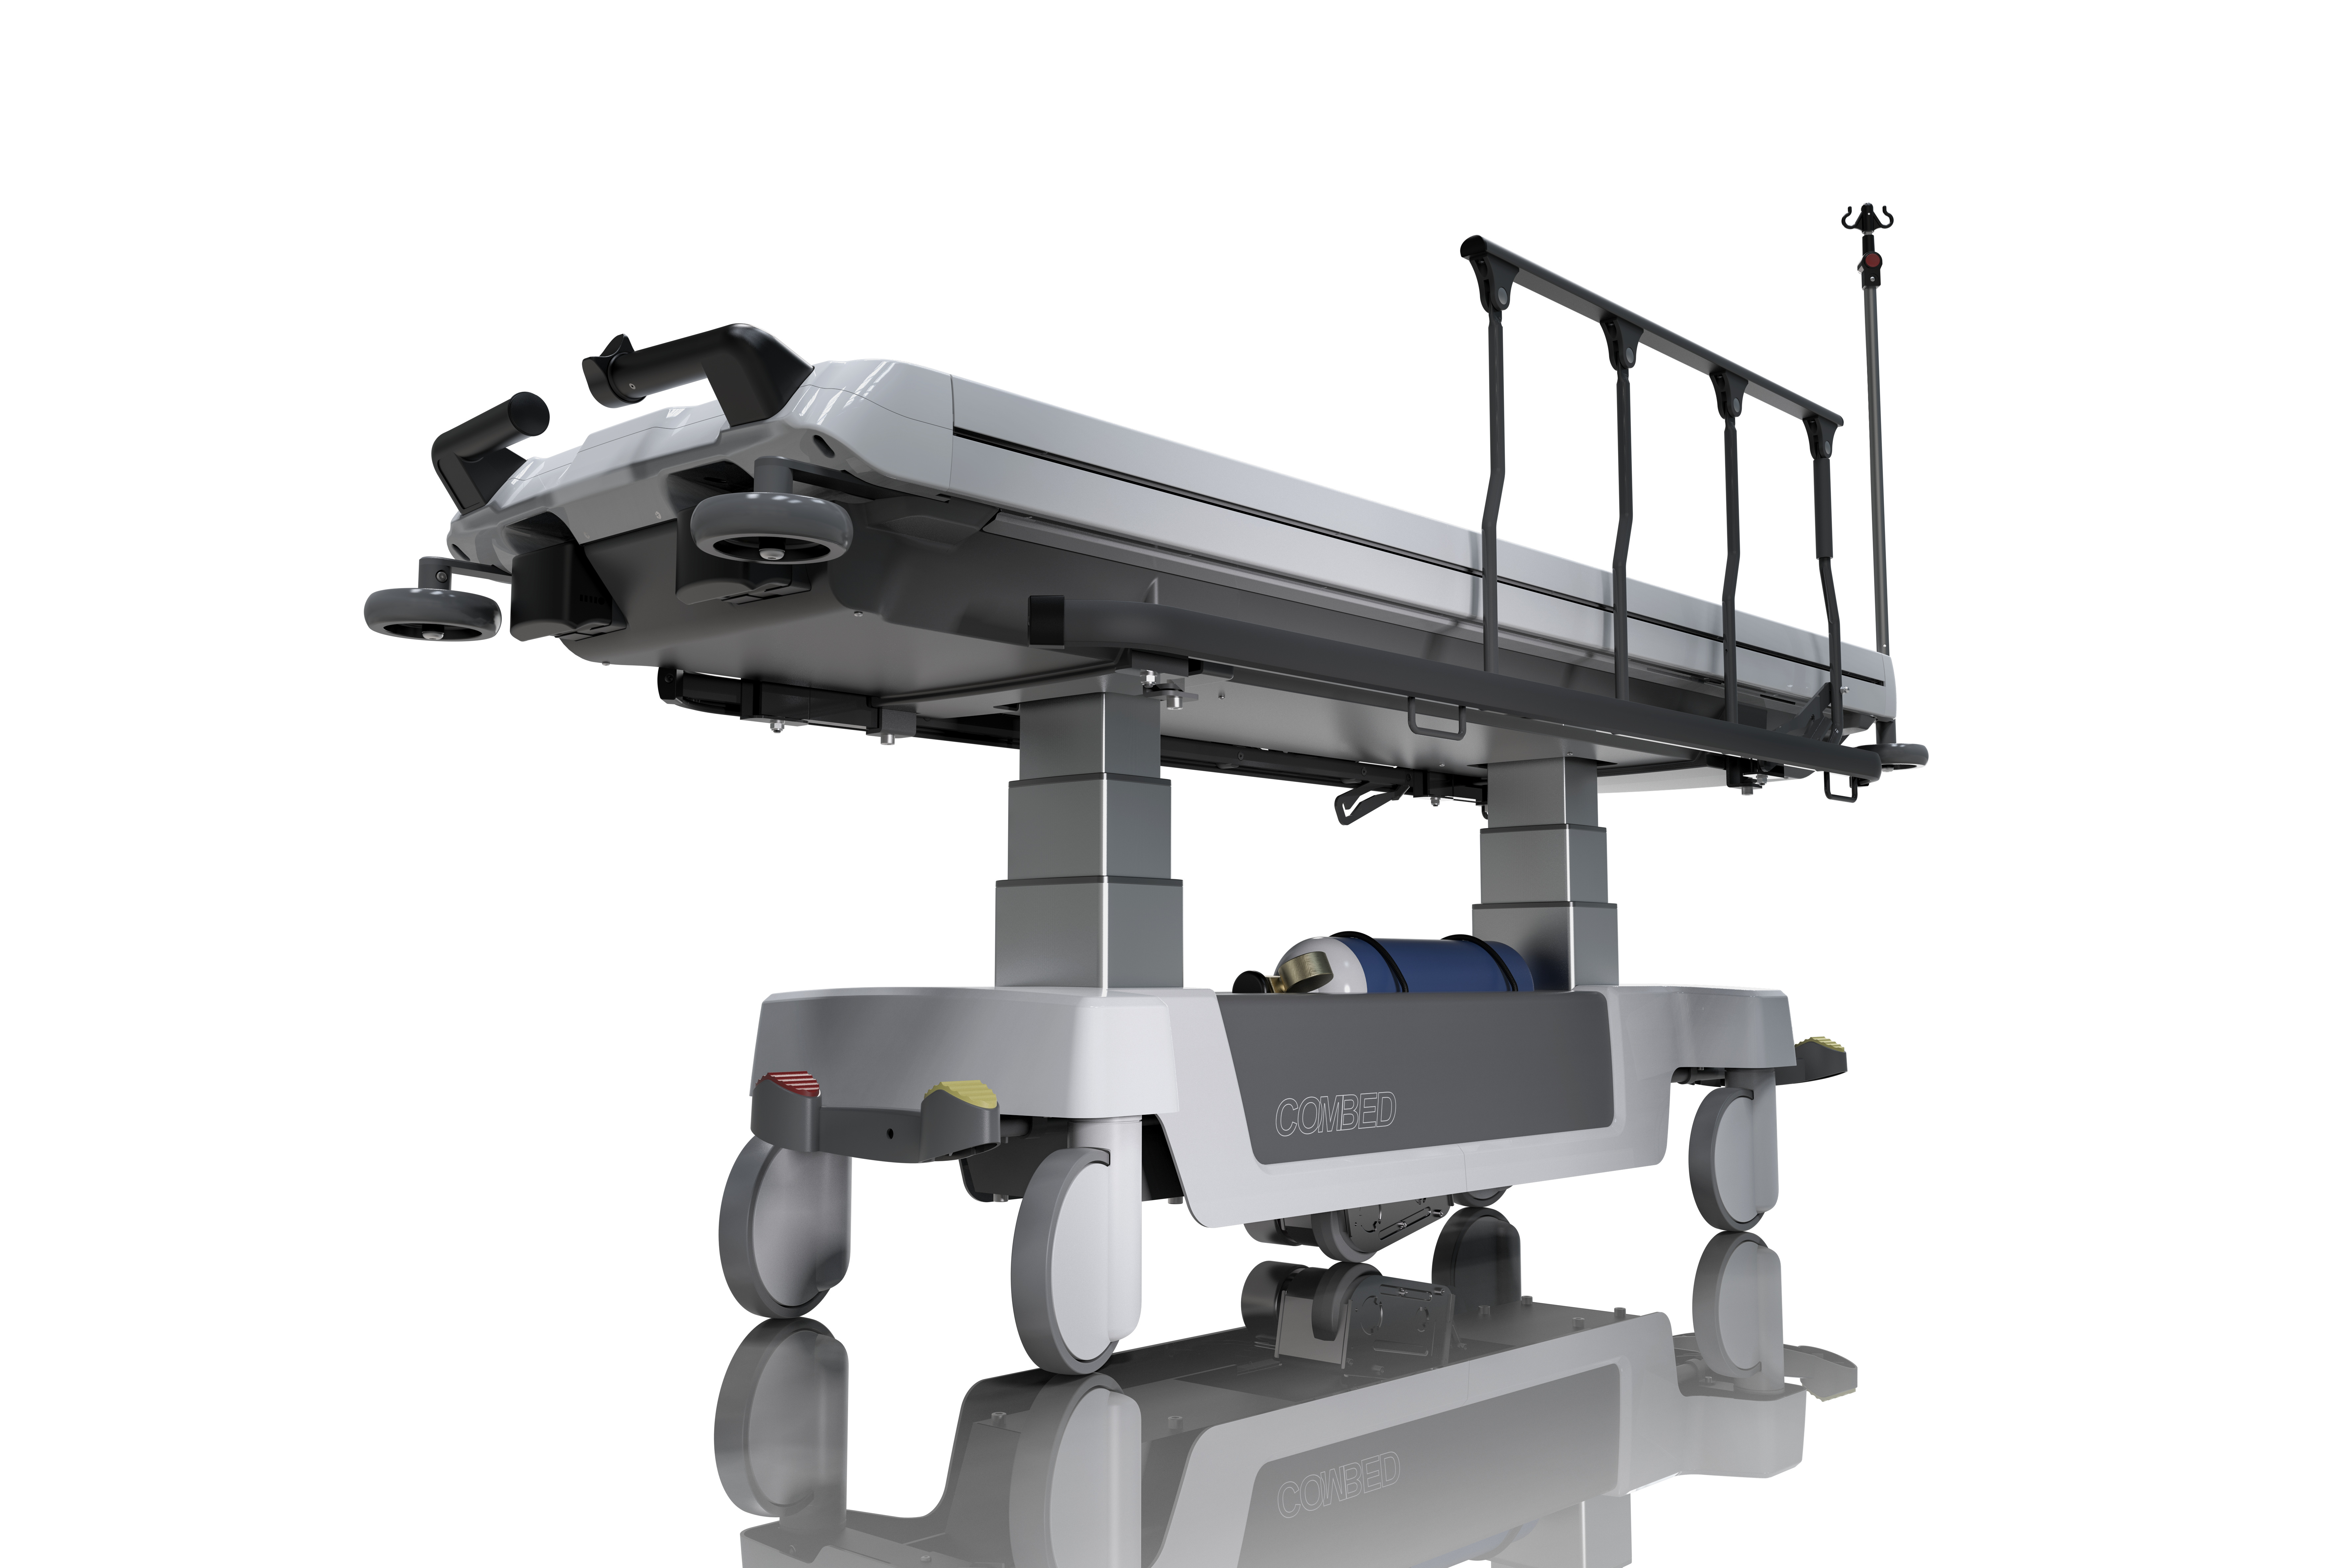 ComBed medizinischer Transferwagen CAD Konstruktion 3D Visualisierung Projekter Industrialdesign Agentur Deutschland